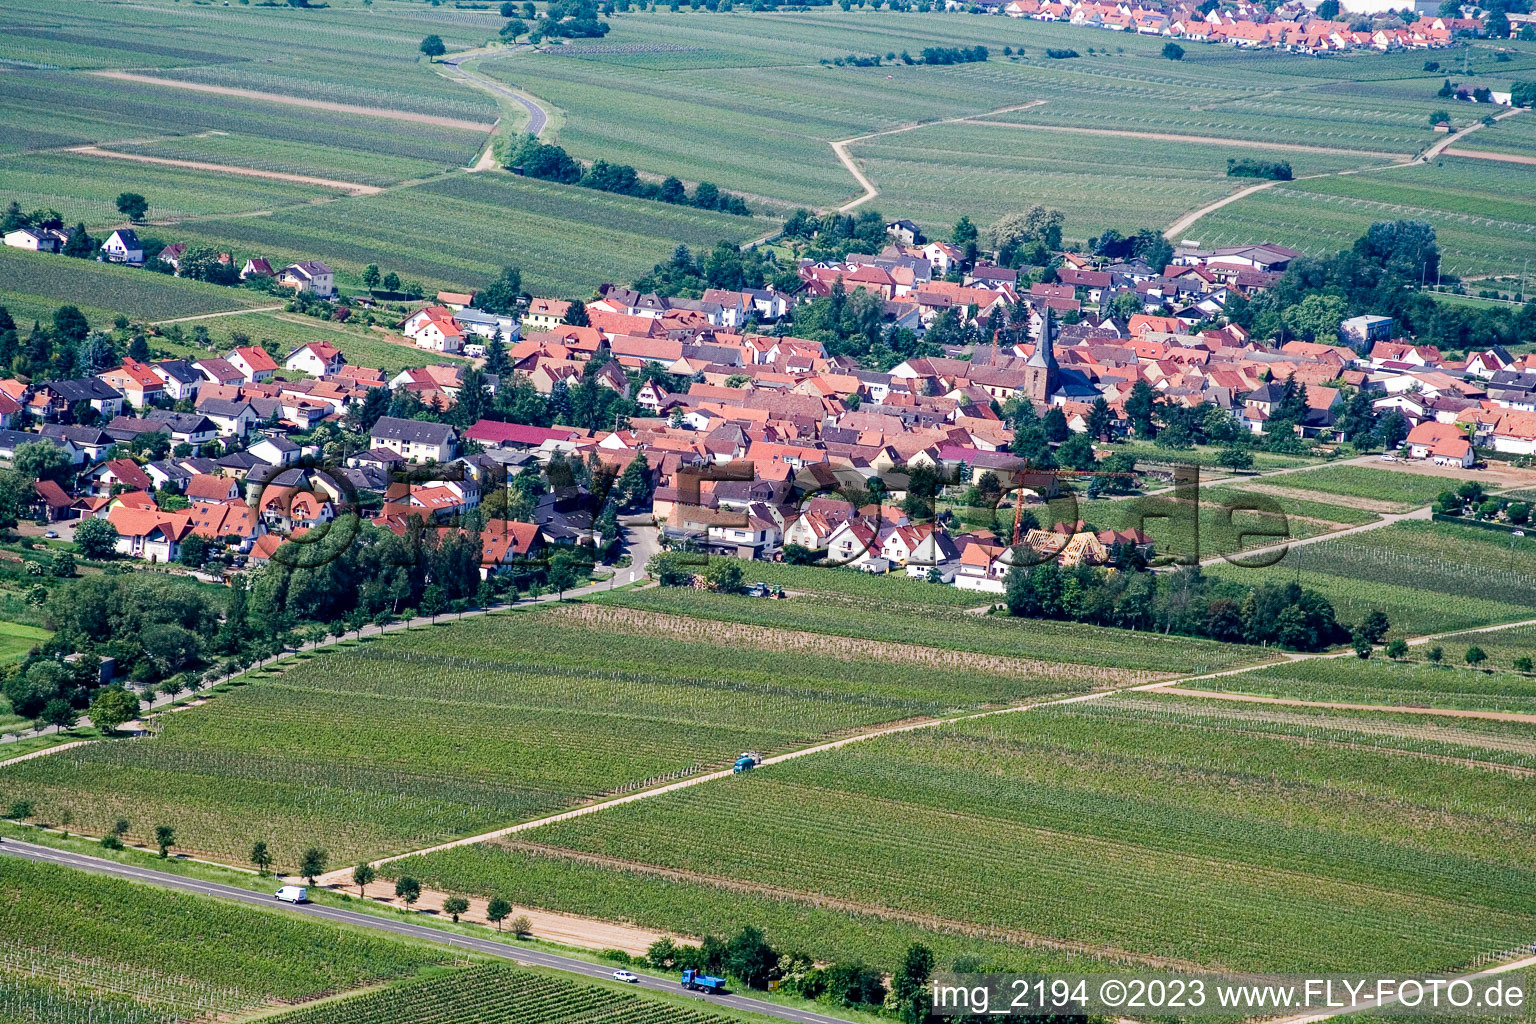 Roschbach im Bundesland Rheinland-Pfalz, Deutschland von der Drohne aus gesehen